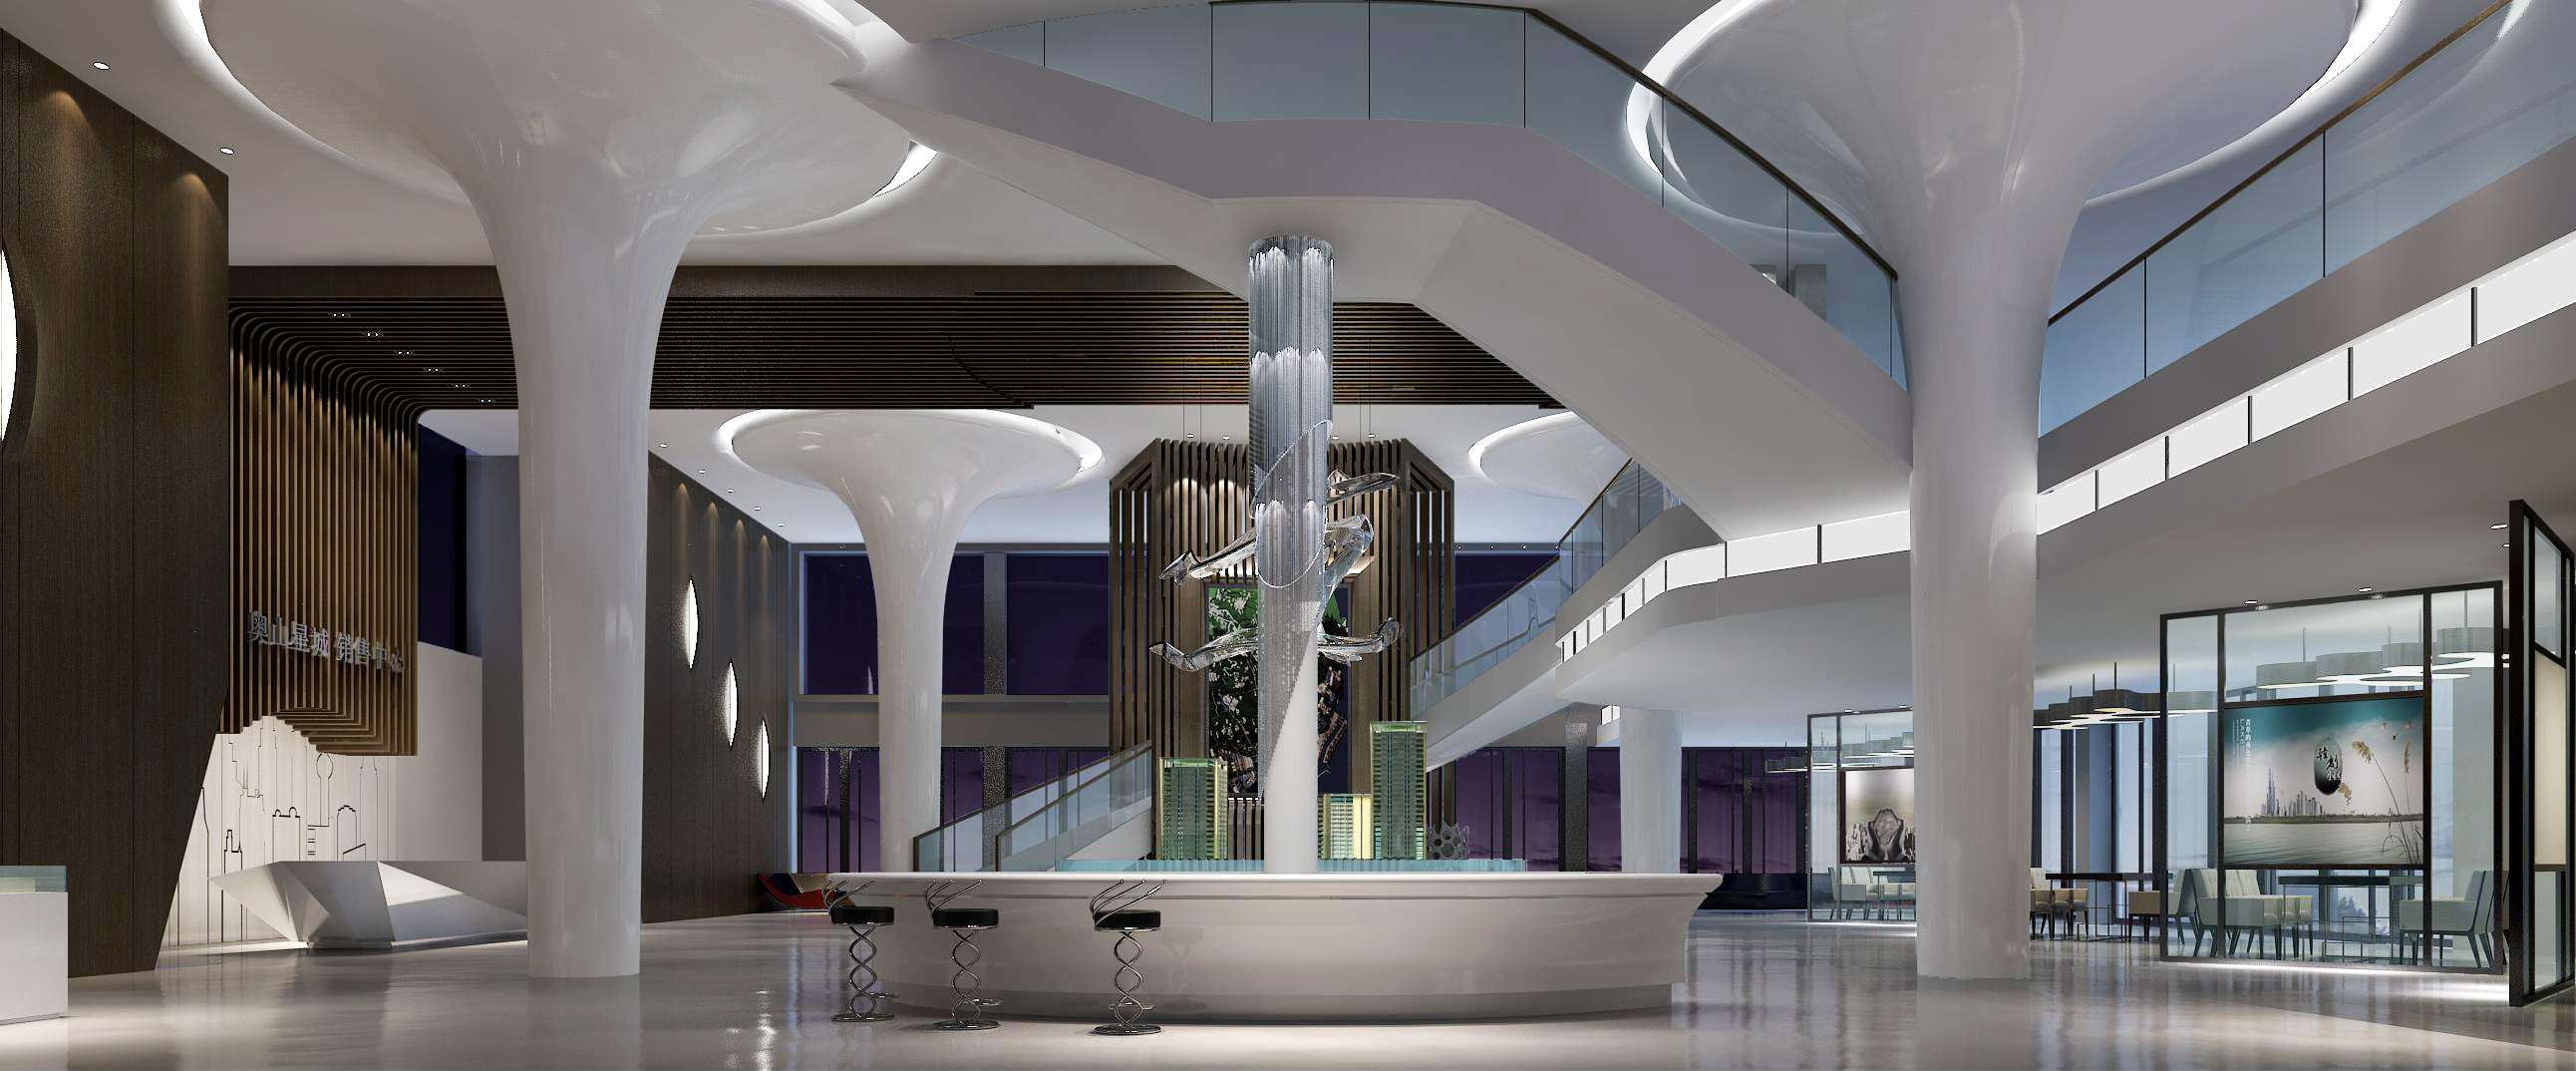 售楼处设计欧式中式现代高清售楼部效果图3D效果图-22